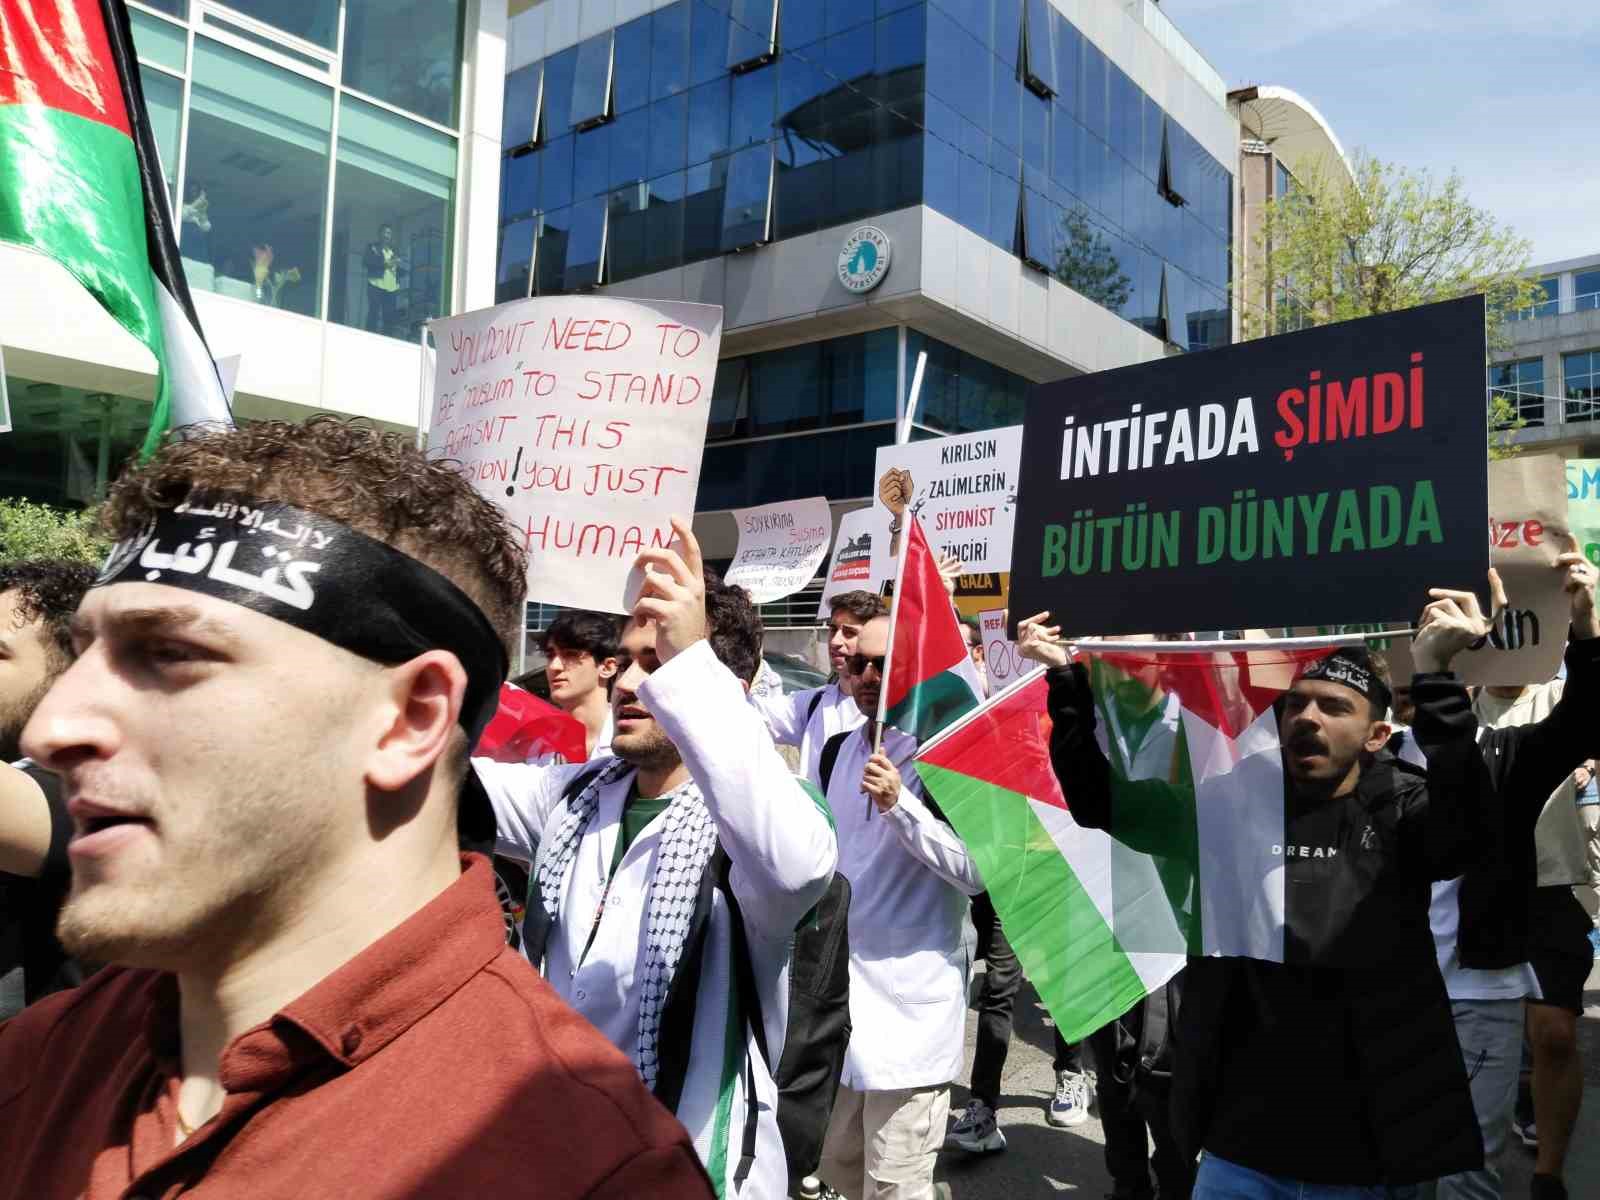 Üsküdar Üniversitesi öğrencilerinden Gazze’ye destek yürüyüşü
